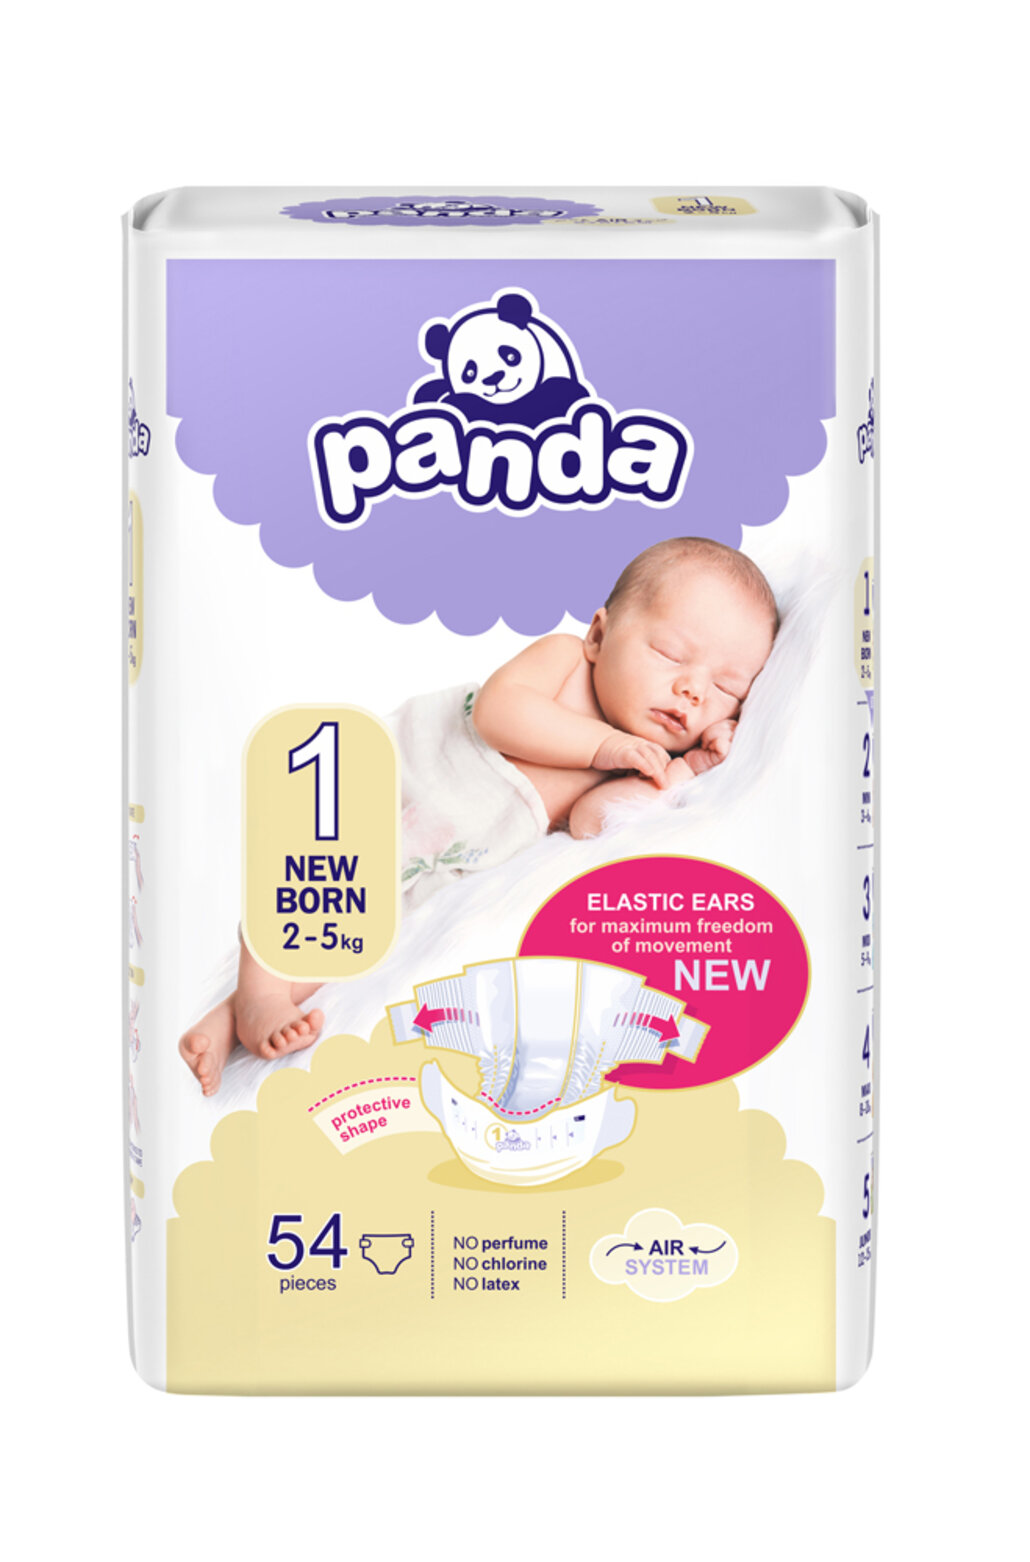 BELLA PANDA Newborn 54 ks (2-5 kg) - jednorazové plienky | Predeti.sk